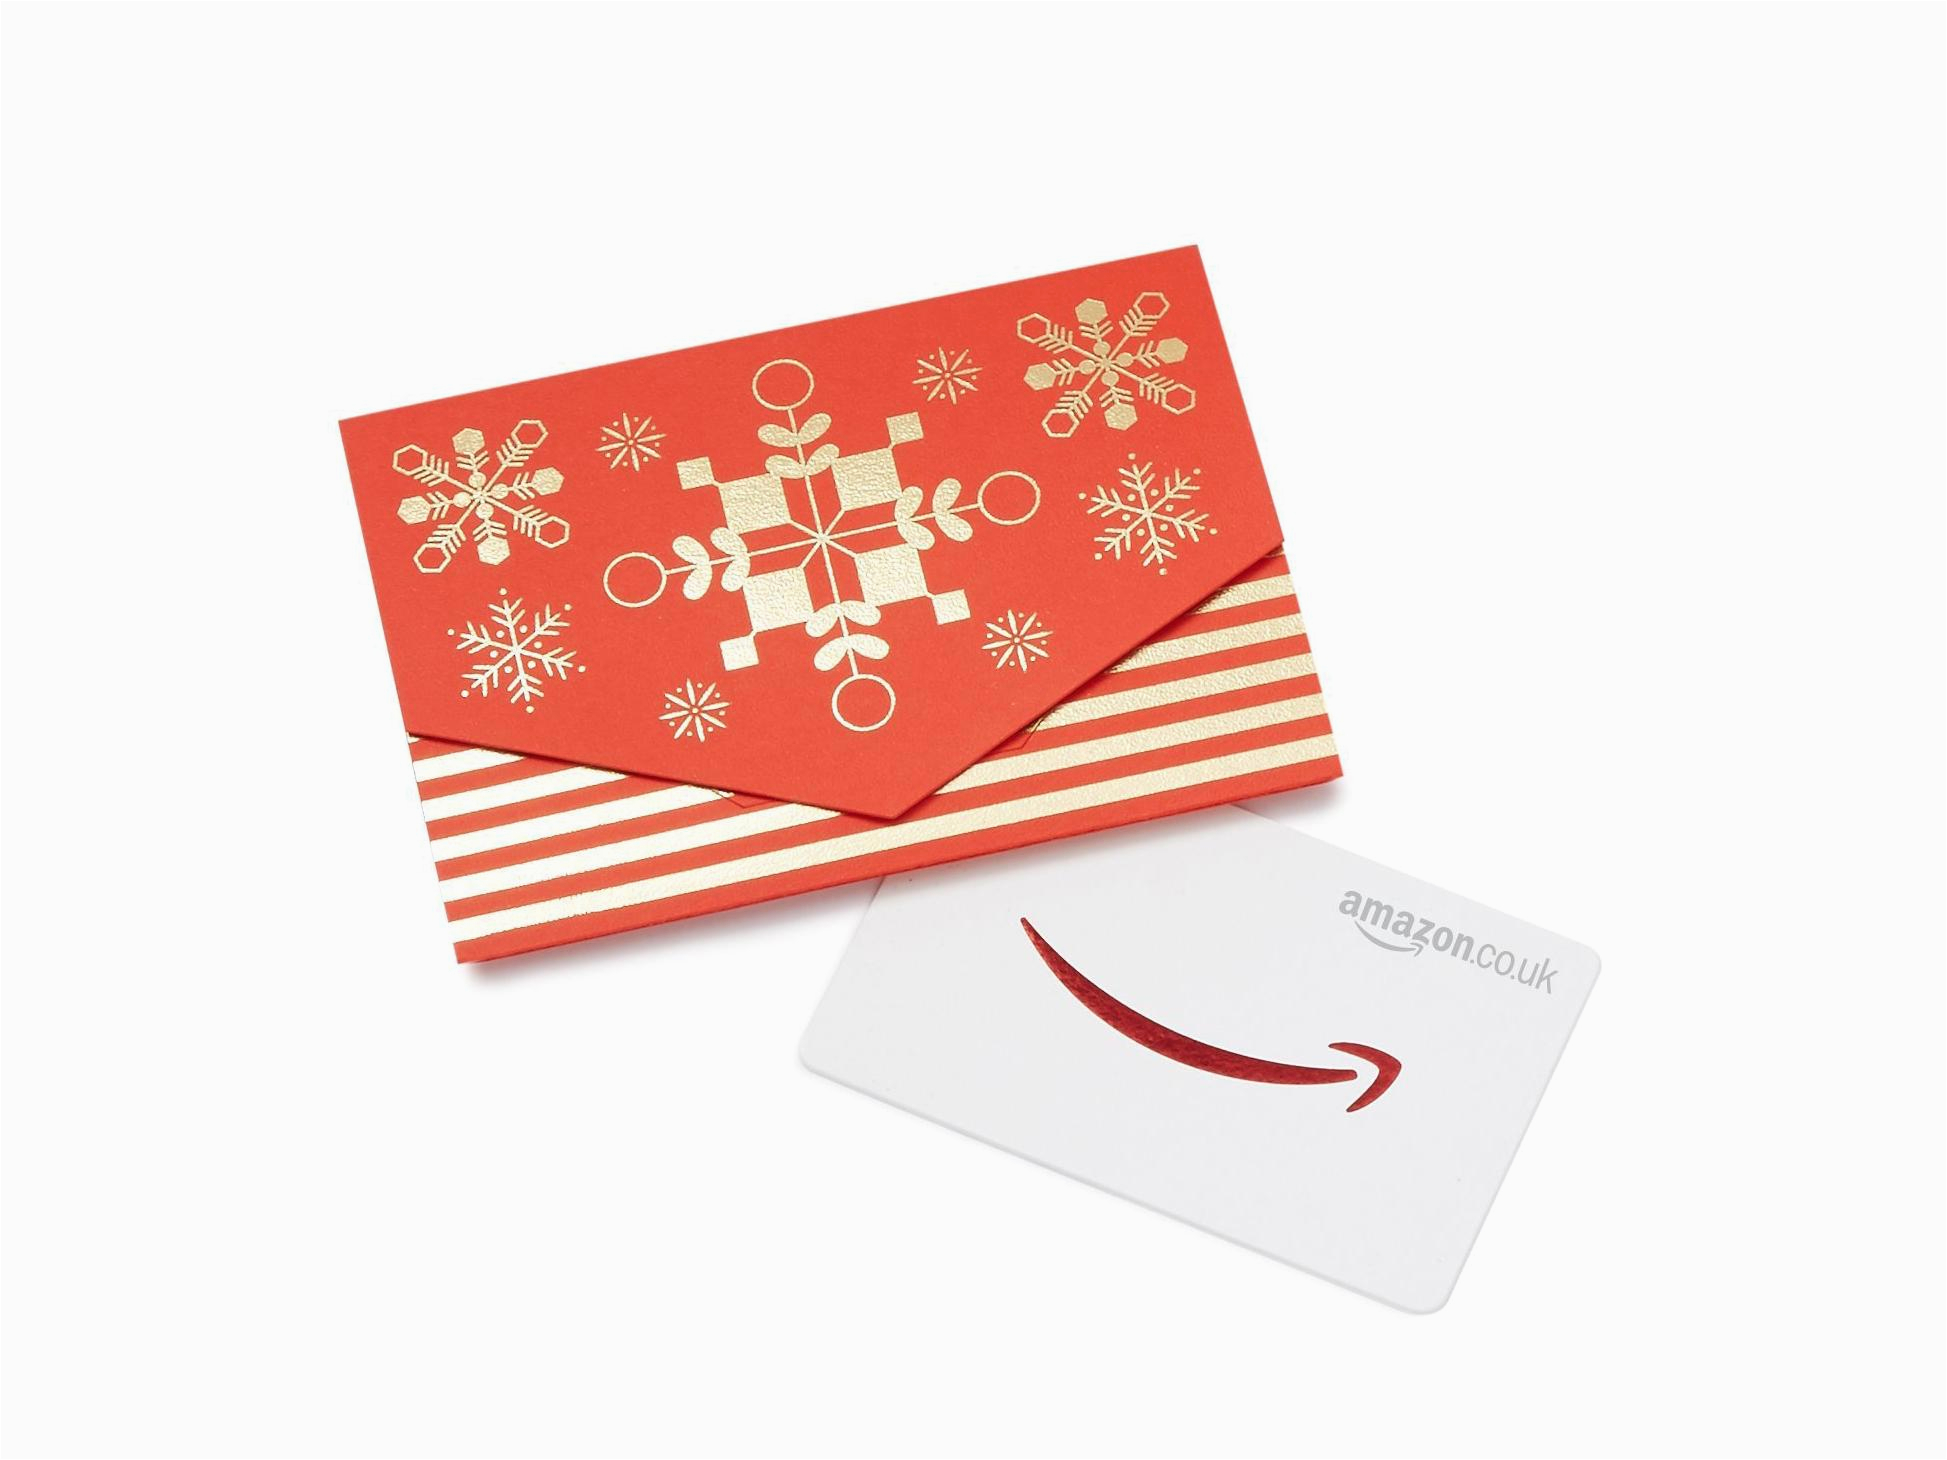 christmas gift card amazon uk jpg